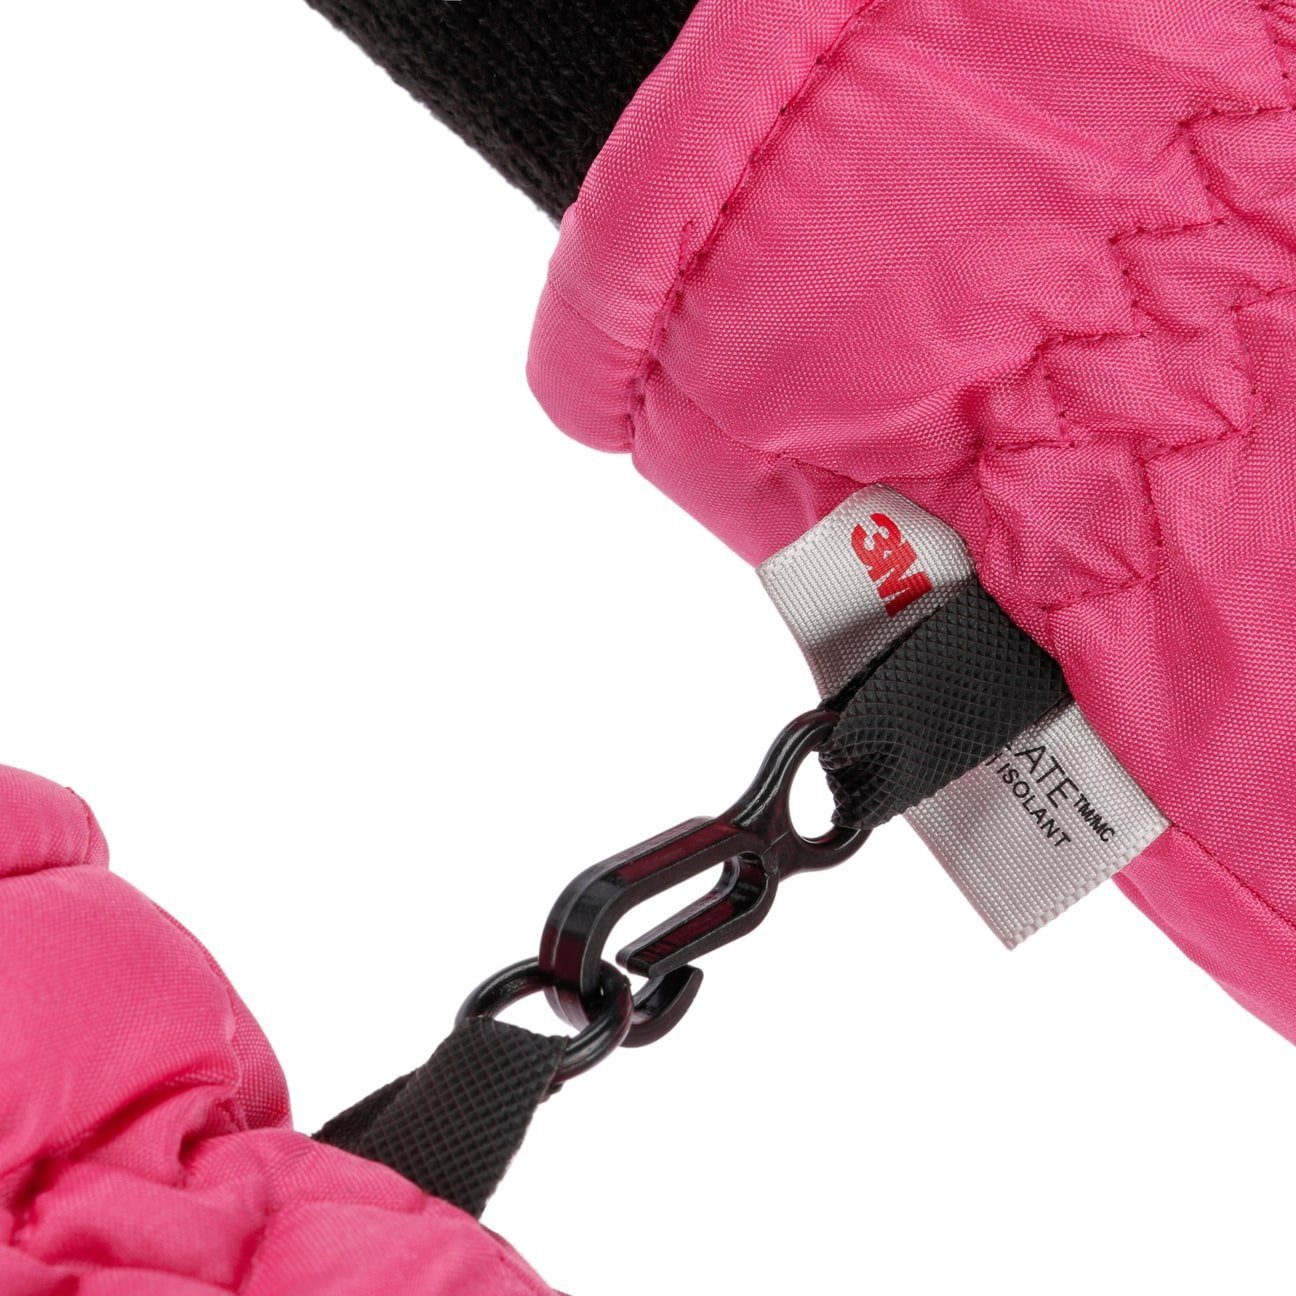 mit Kinderhandschuhe Skihandschuhe Futter pink Fiebig